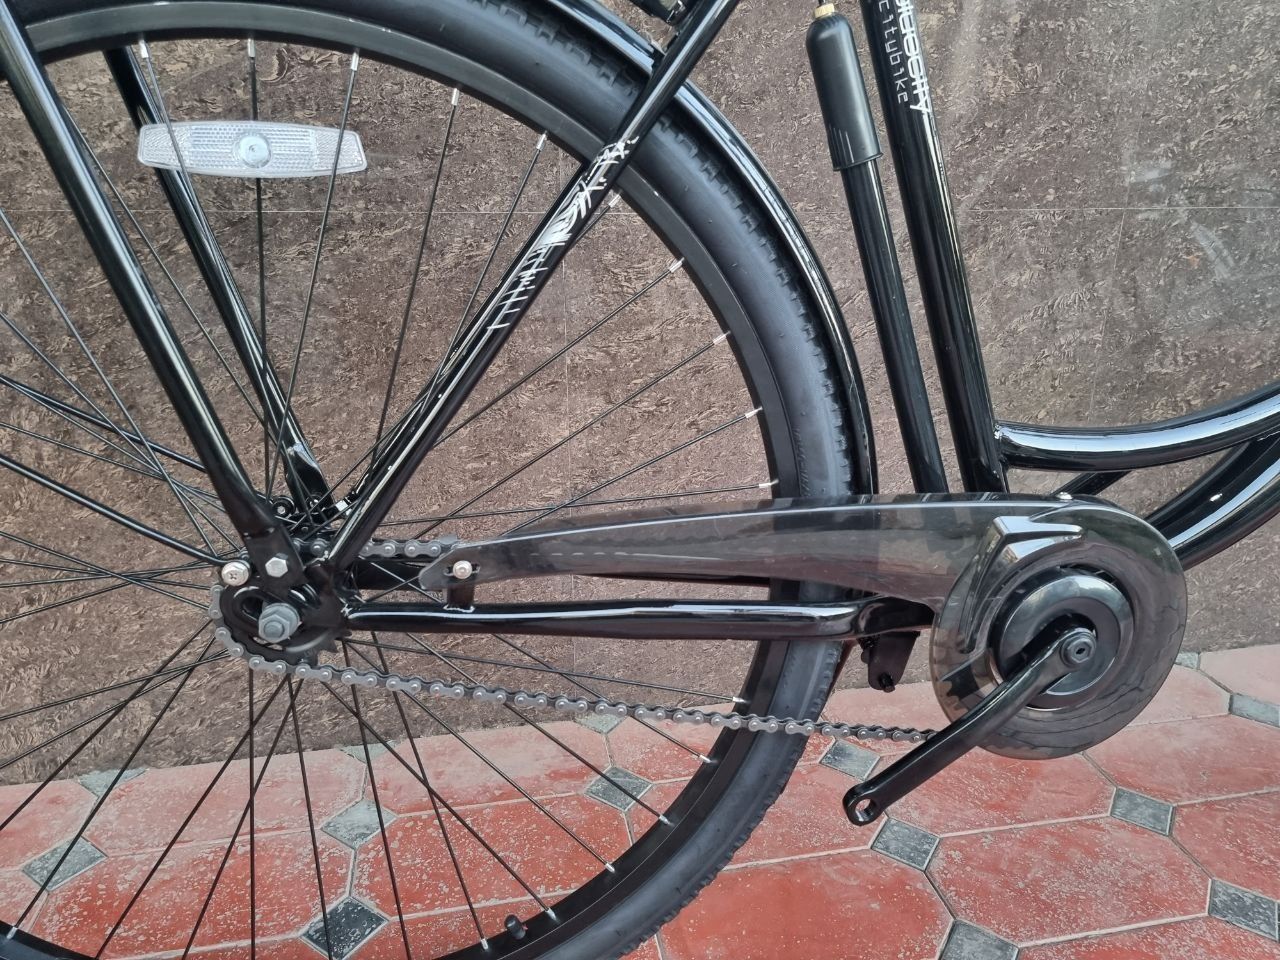 Городской велосипед TMIK 28. (black) в наличие есть и другие цвета.